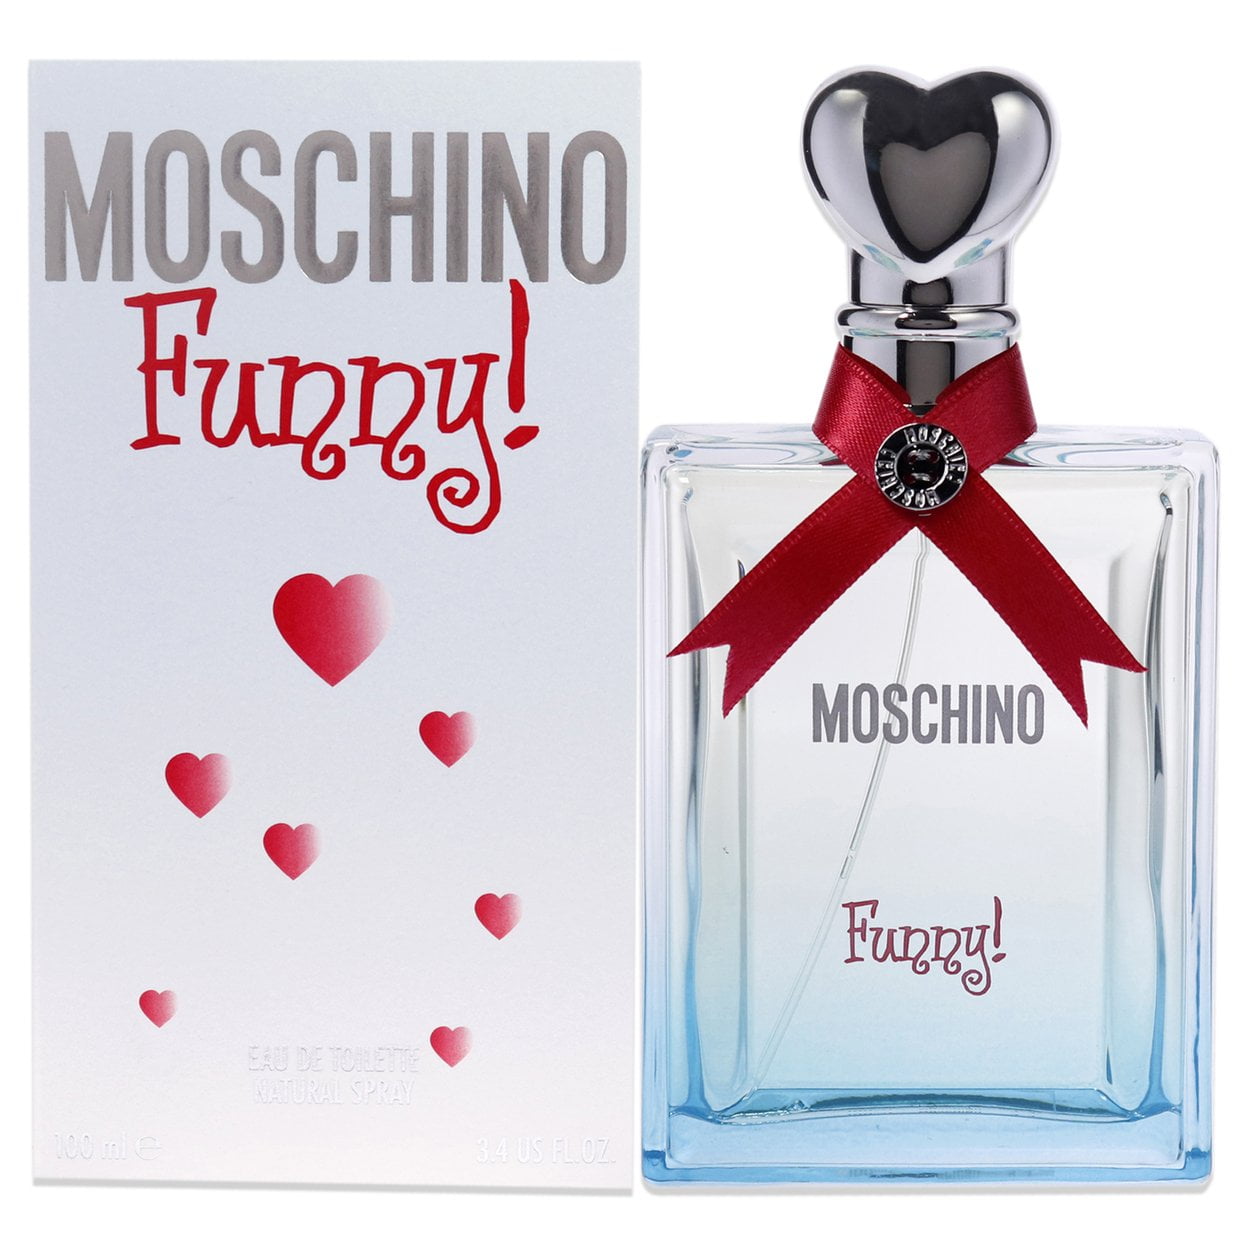 Moschino for Eau Moschino Toilette Spray 3.4 De Funny oz Women